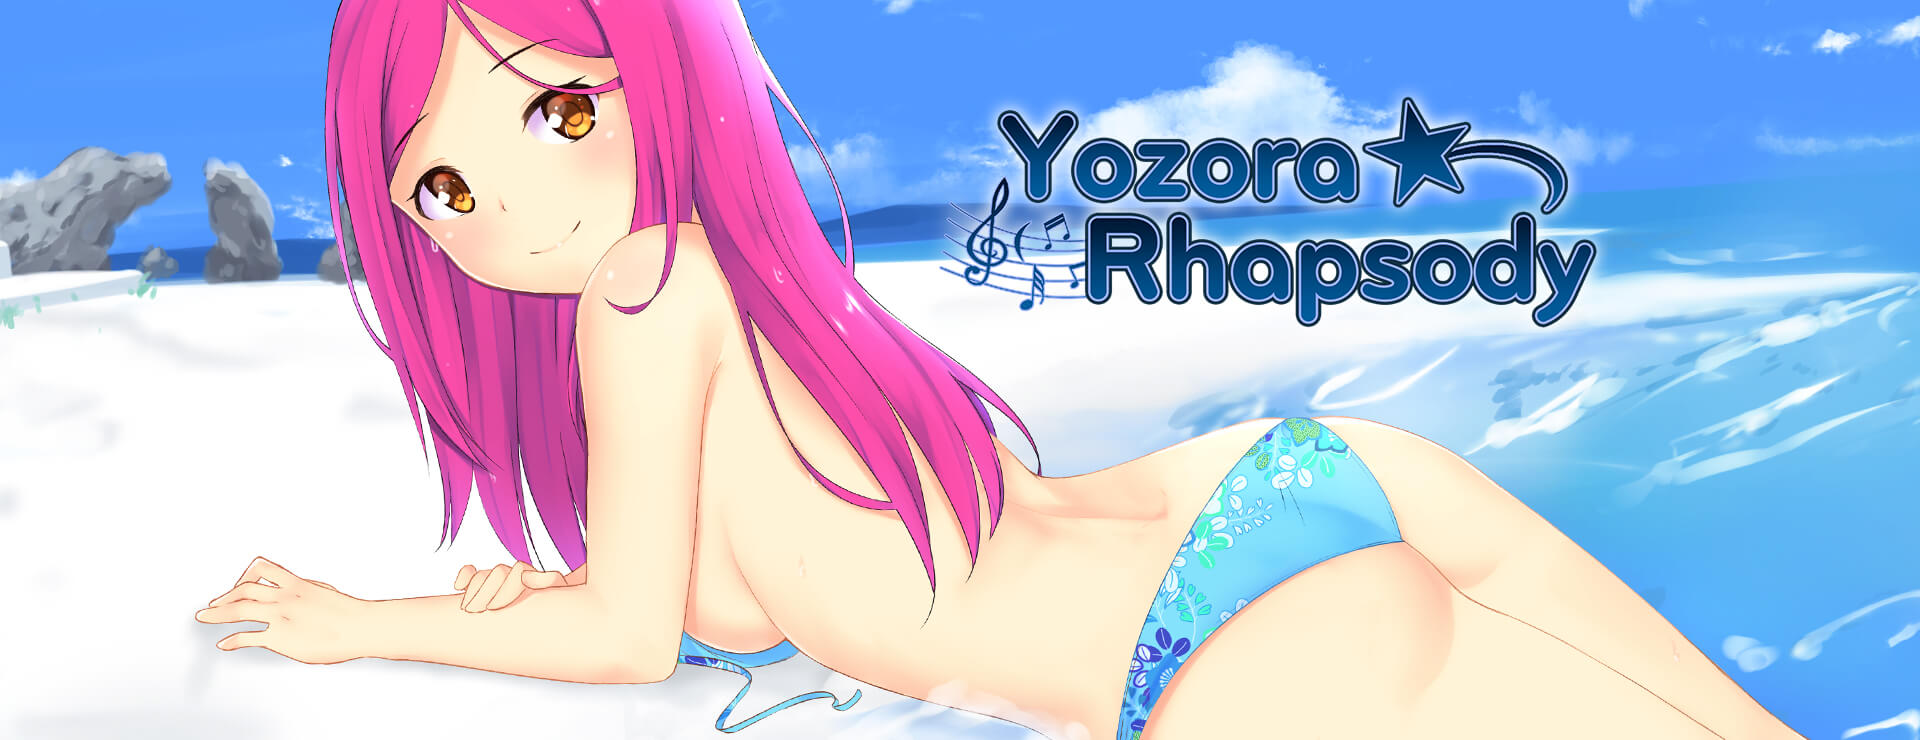 Yozora Rhapsody - Visual Novel Game